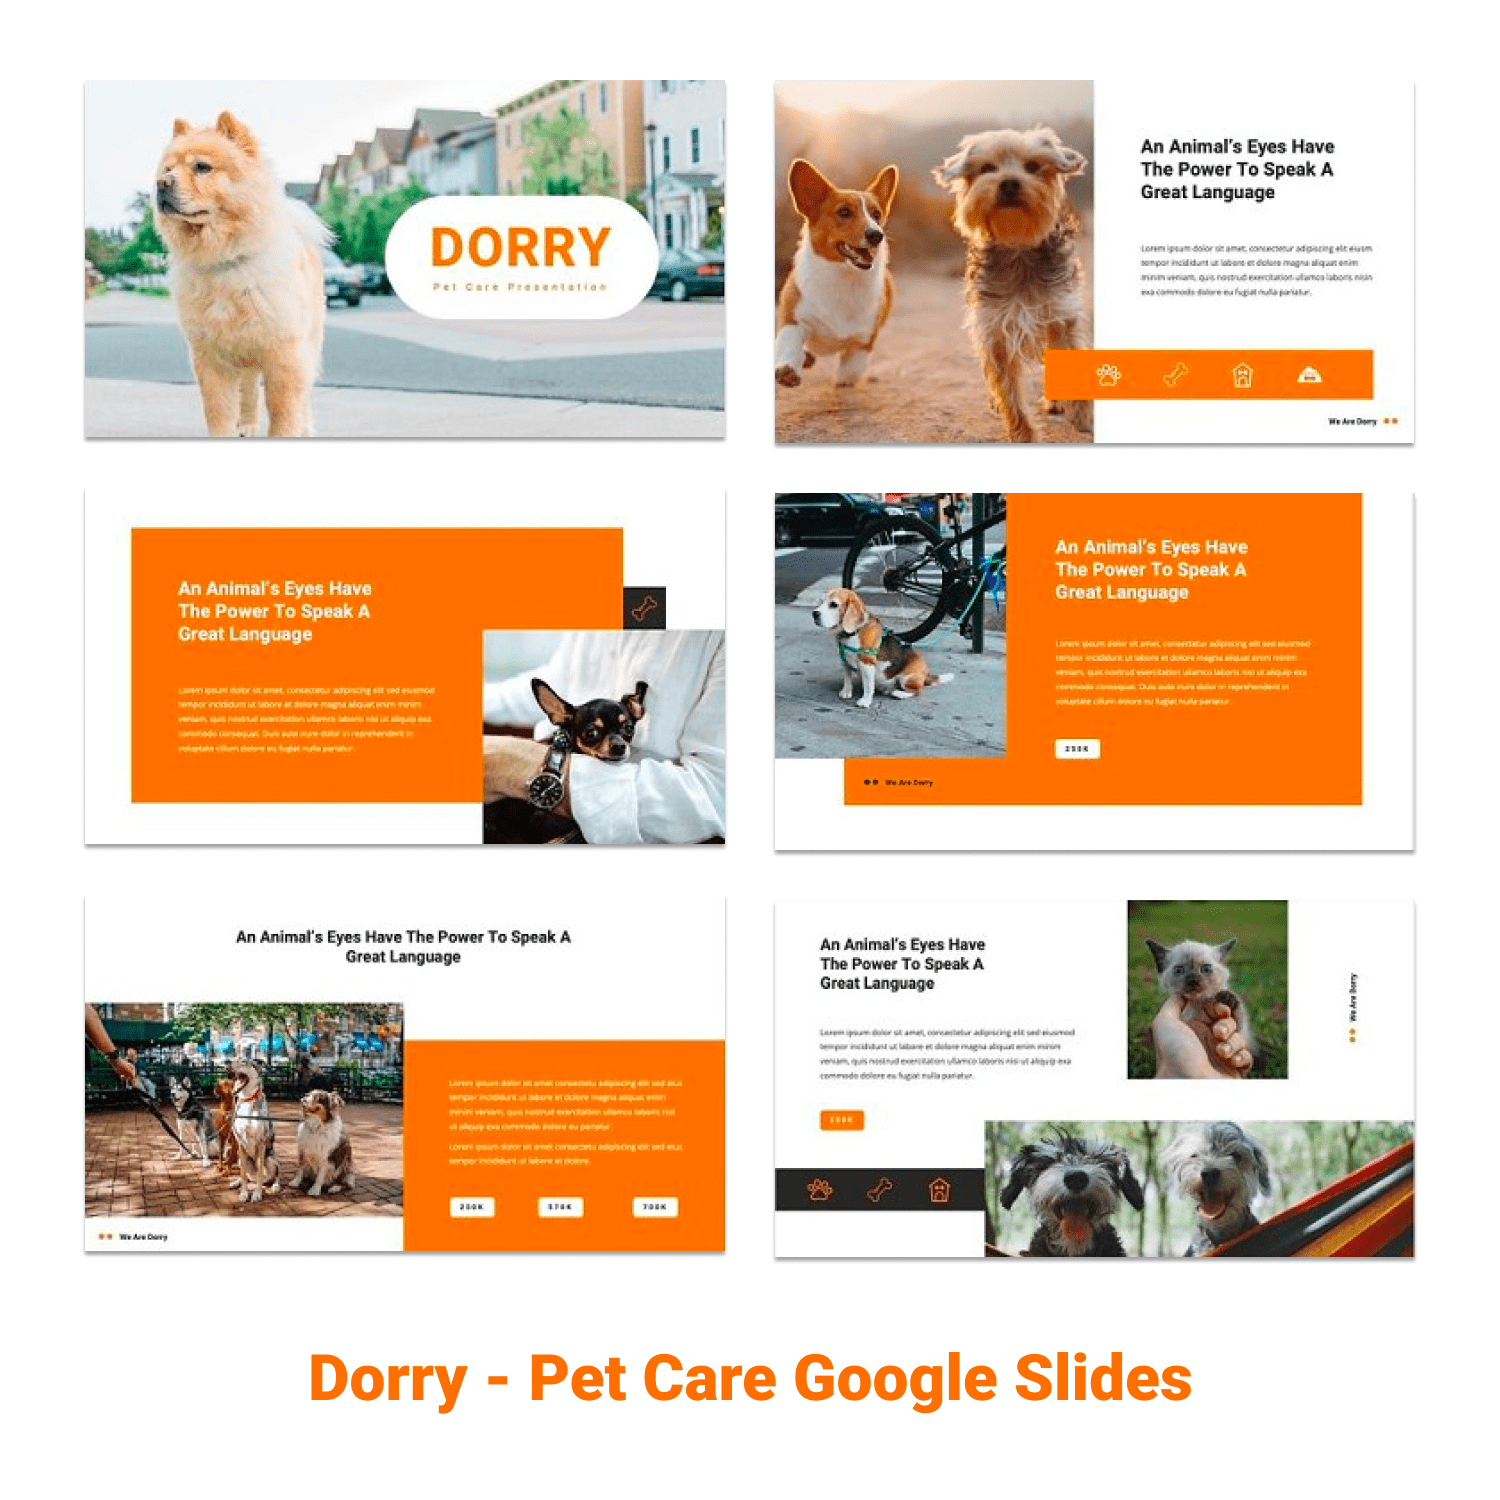 Dorry - Pet Care Google Slides cover.